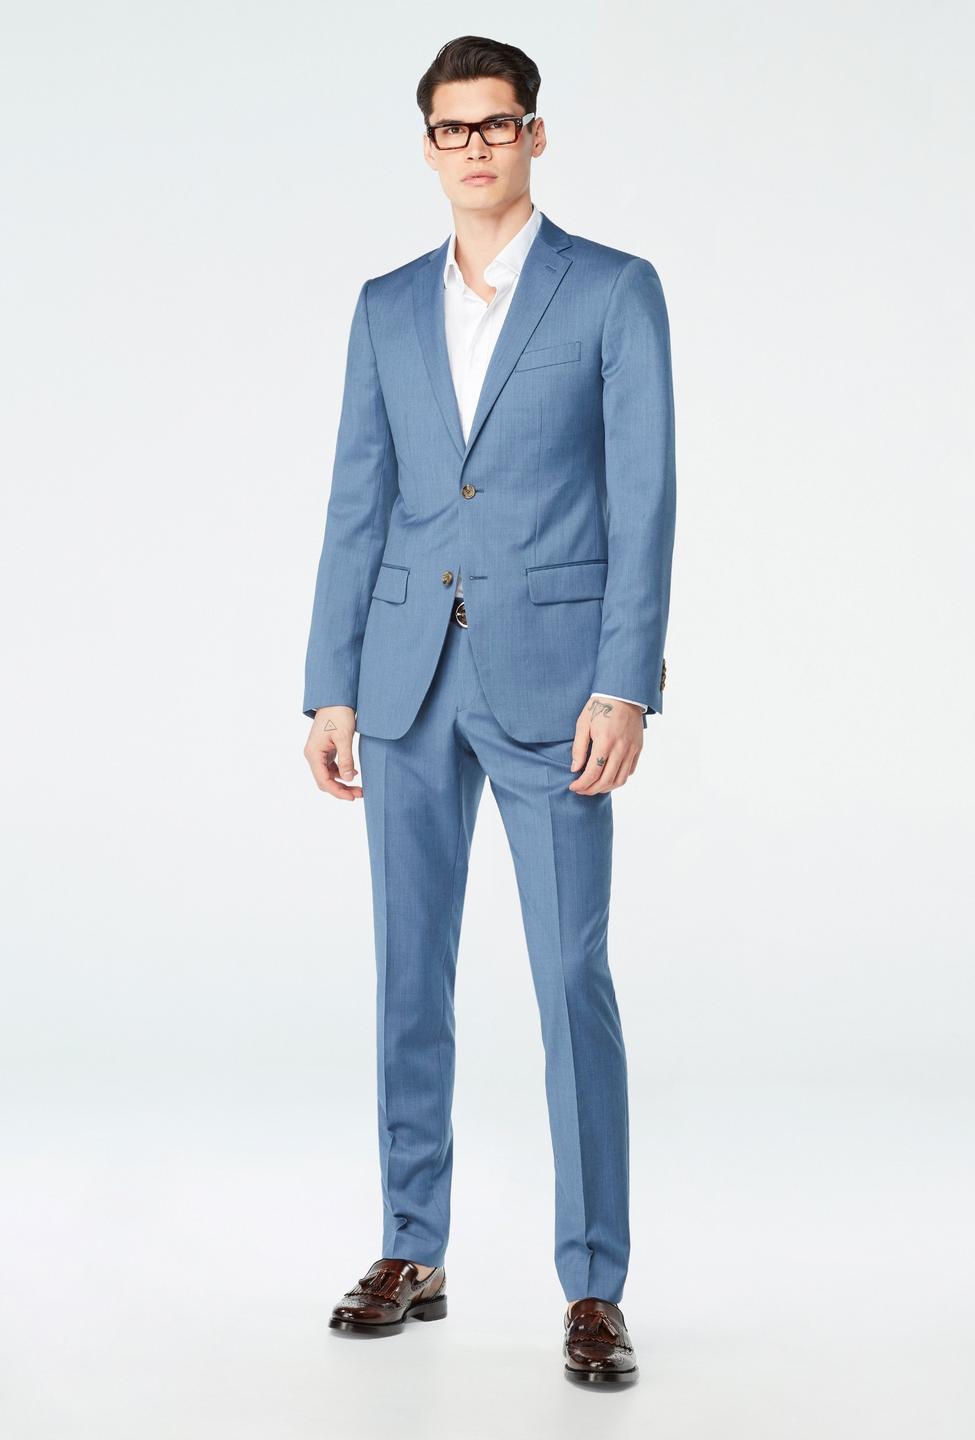 Blue blazer - Hemsworth Solid Design from Premium Indochino Collection